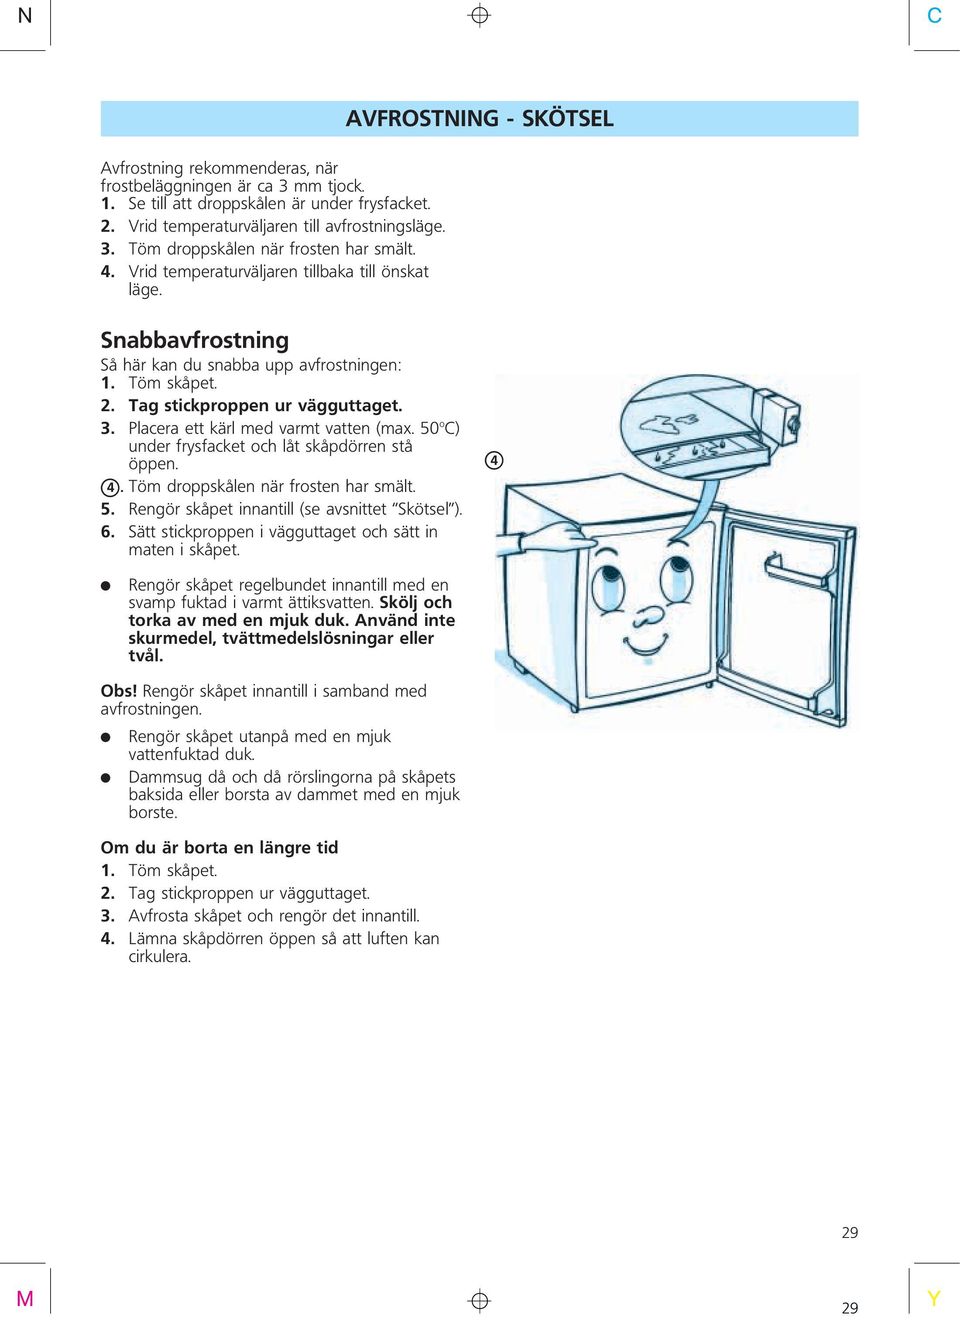 Placera ett kärl med varmt vatten (ma. 50 o ) under frysfacket och låt skåpdörren stå öppen. X4.Töm droppskålen när frosten har smält. 5. Rengör skåpet innantill (se avsnittet Skötsel ). 6.